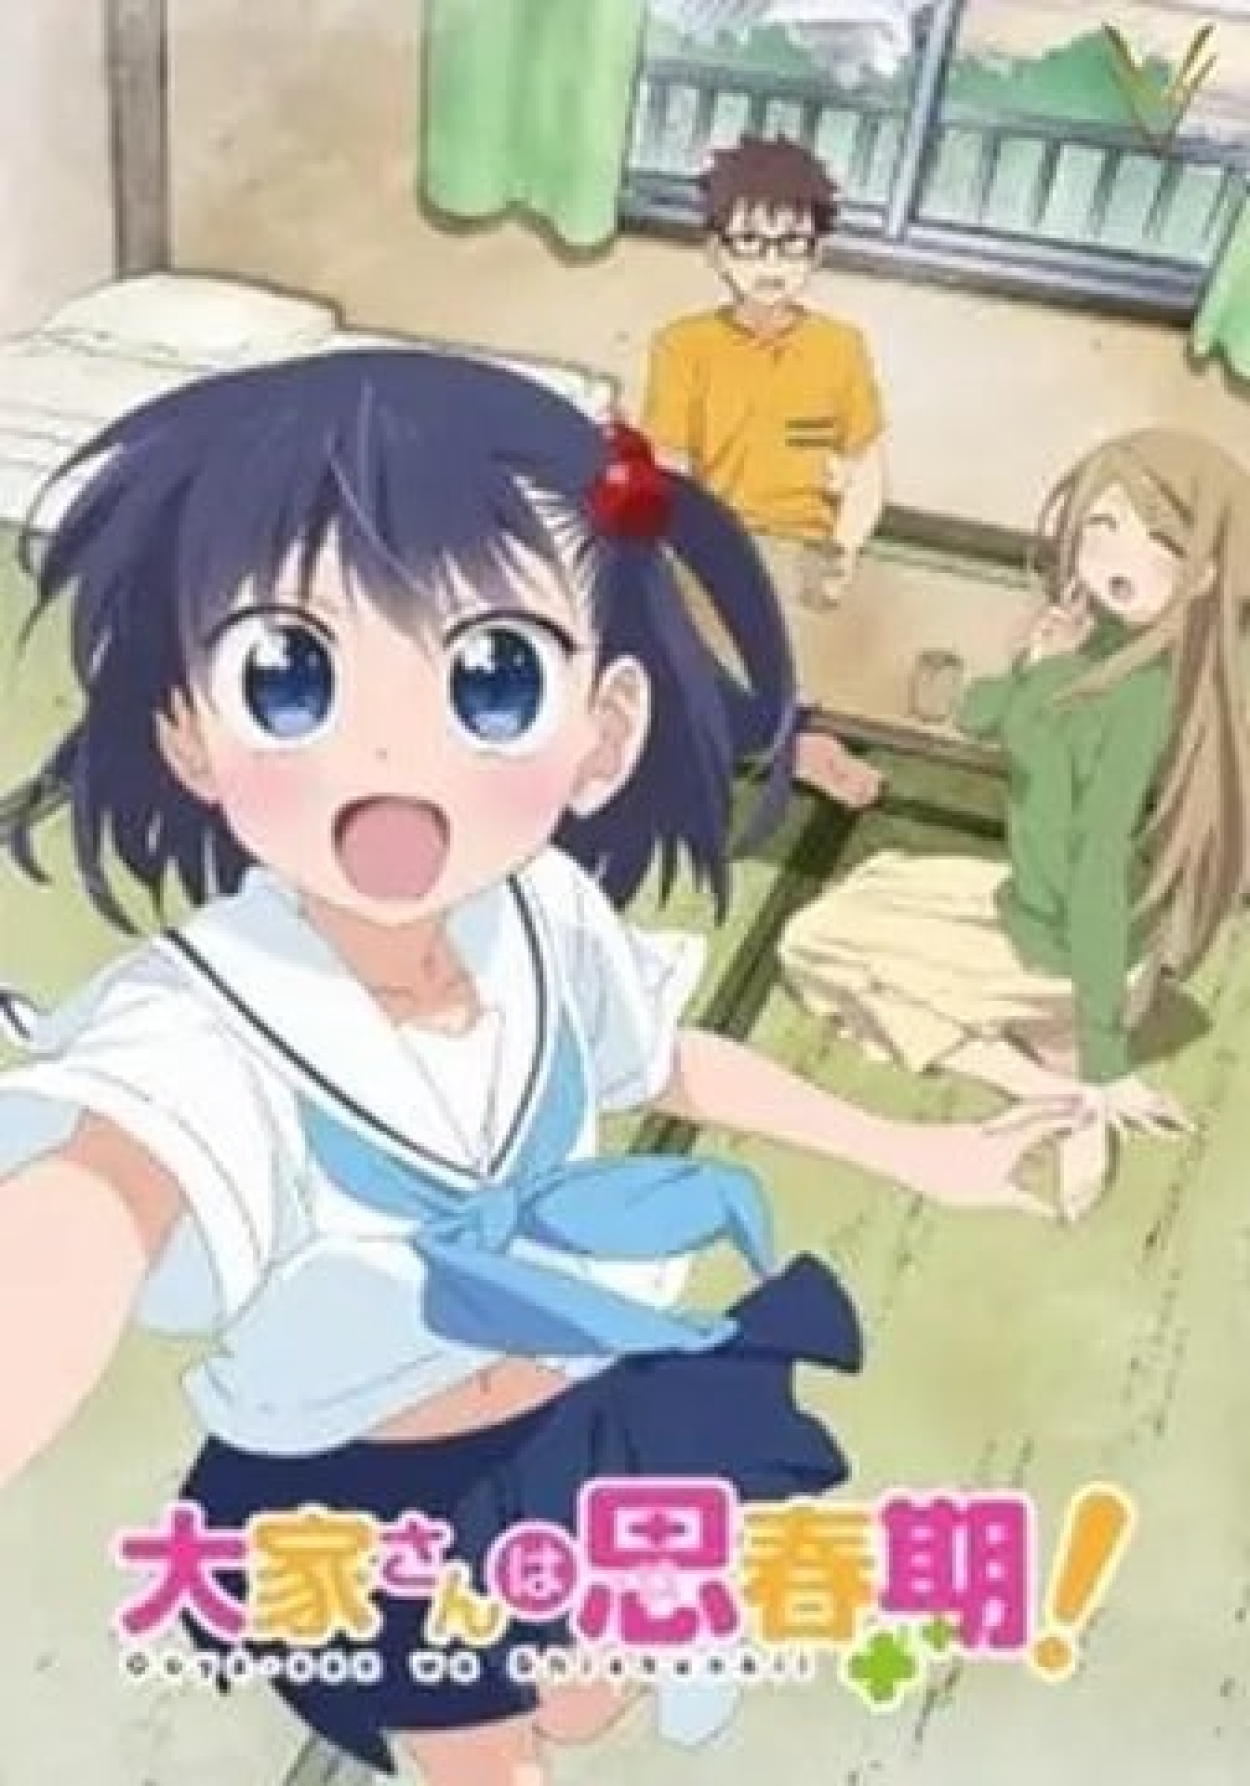 Anime Ao Haru Ride - Sinopse, Trailers, Curiosidades e muito mais - Cinema10